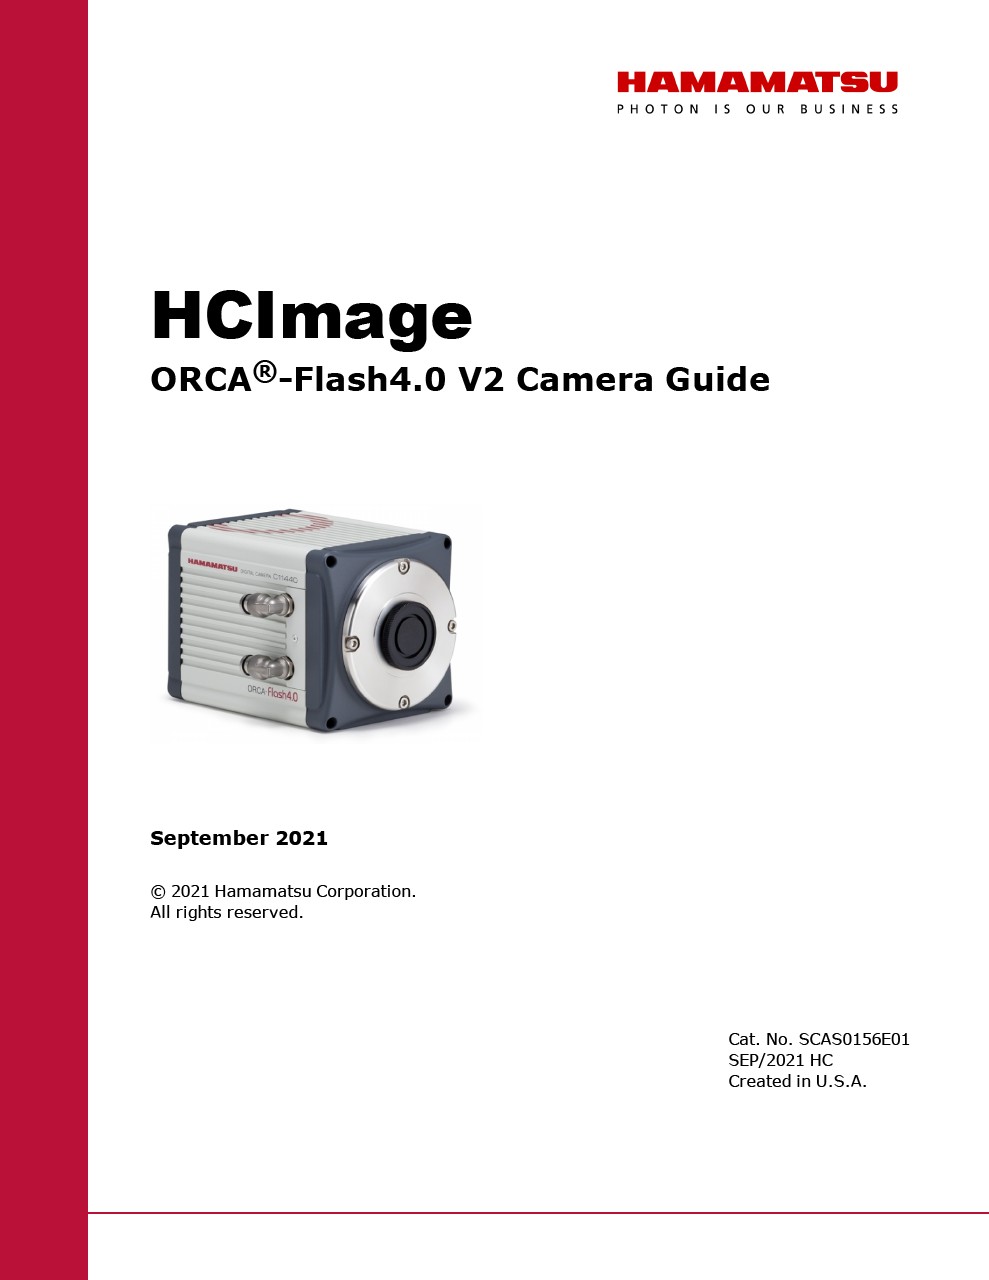 HCImage ORCA-Flash4.0 V2 Camera Guide